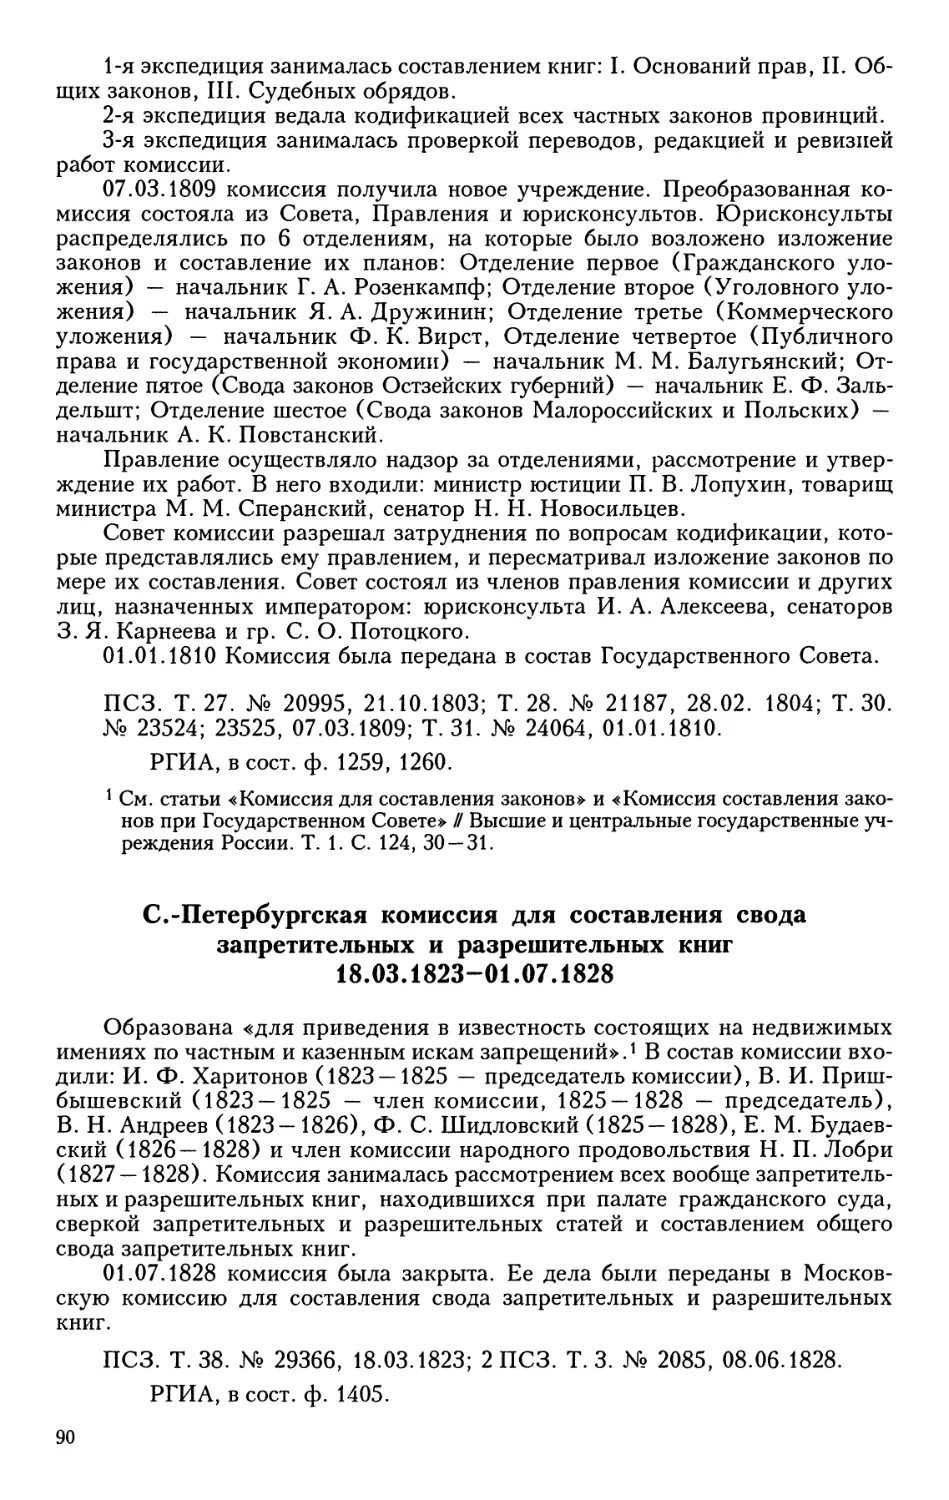 С.-Петербургская комиссия для составления свода запретительных и  разрешительных книг